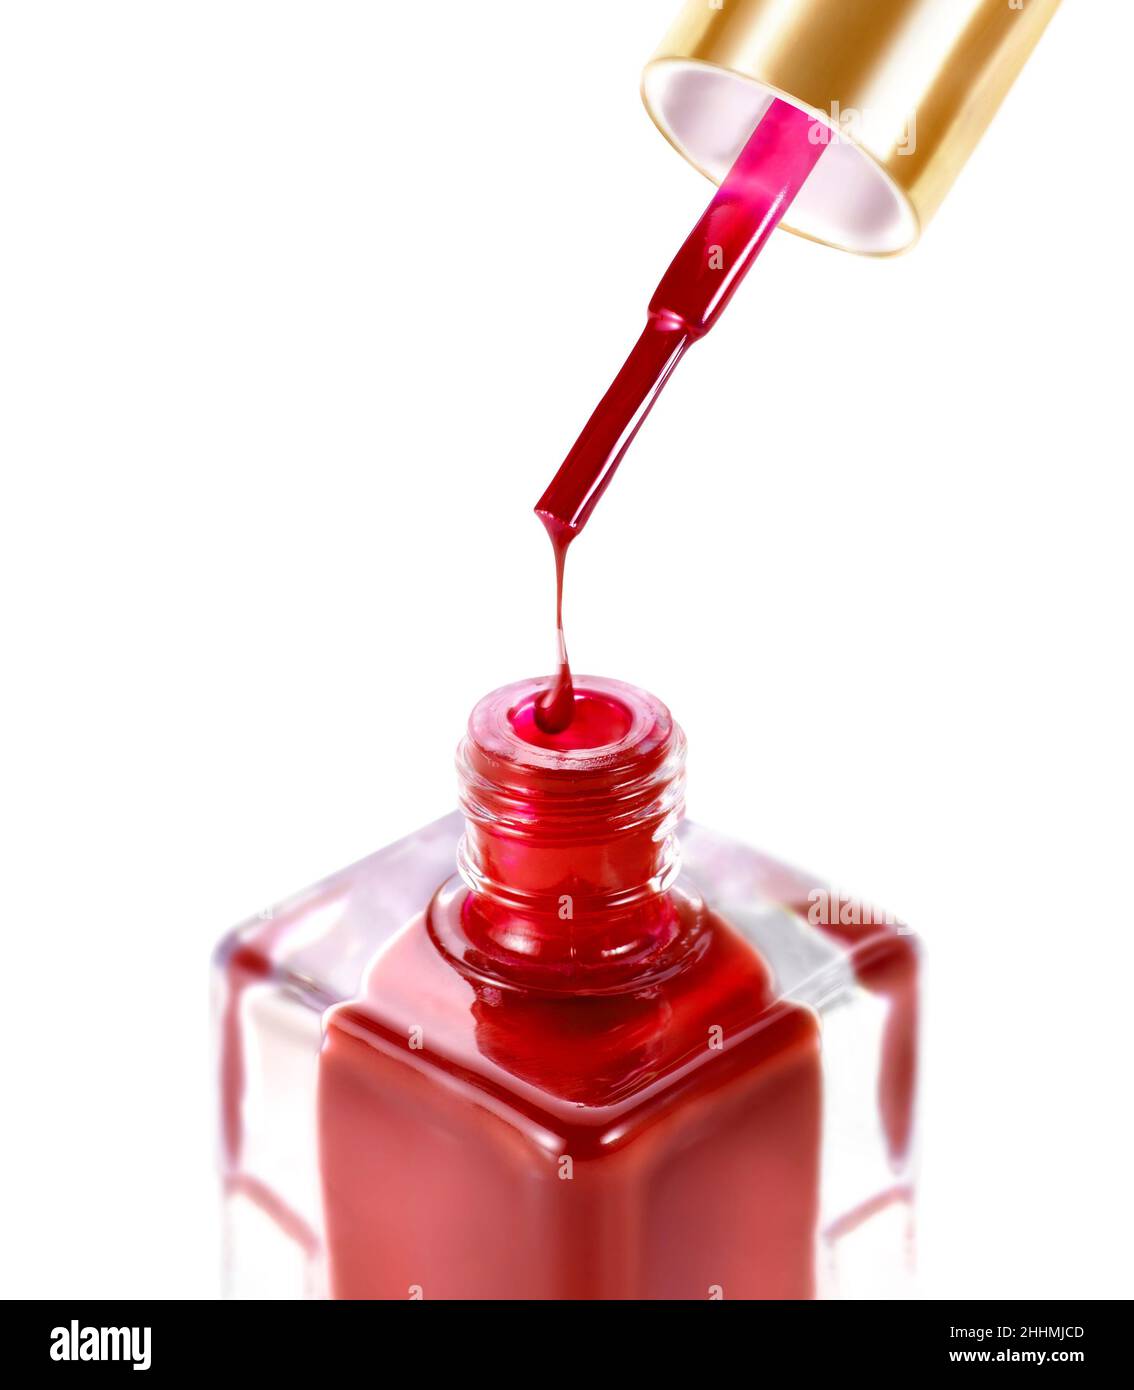 Botella de esmalte de uñas de color rojo y cepillo goteando. Sobre fondo blanco Foto de stock